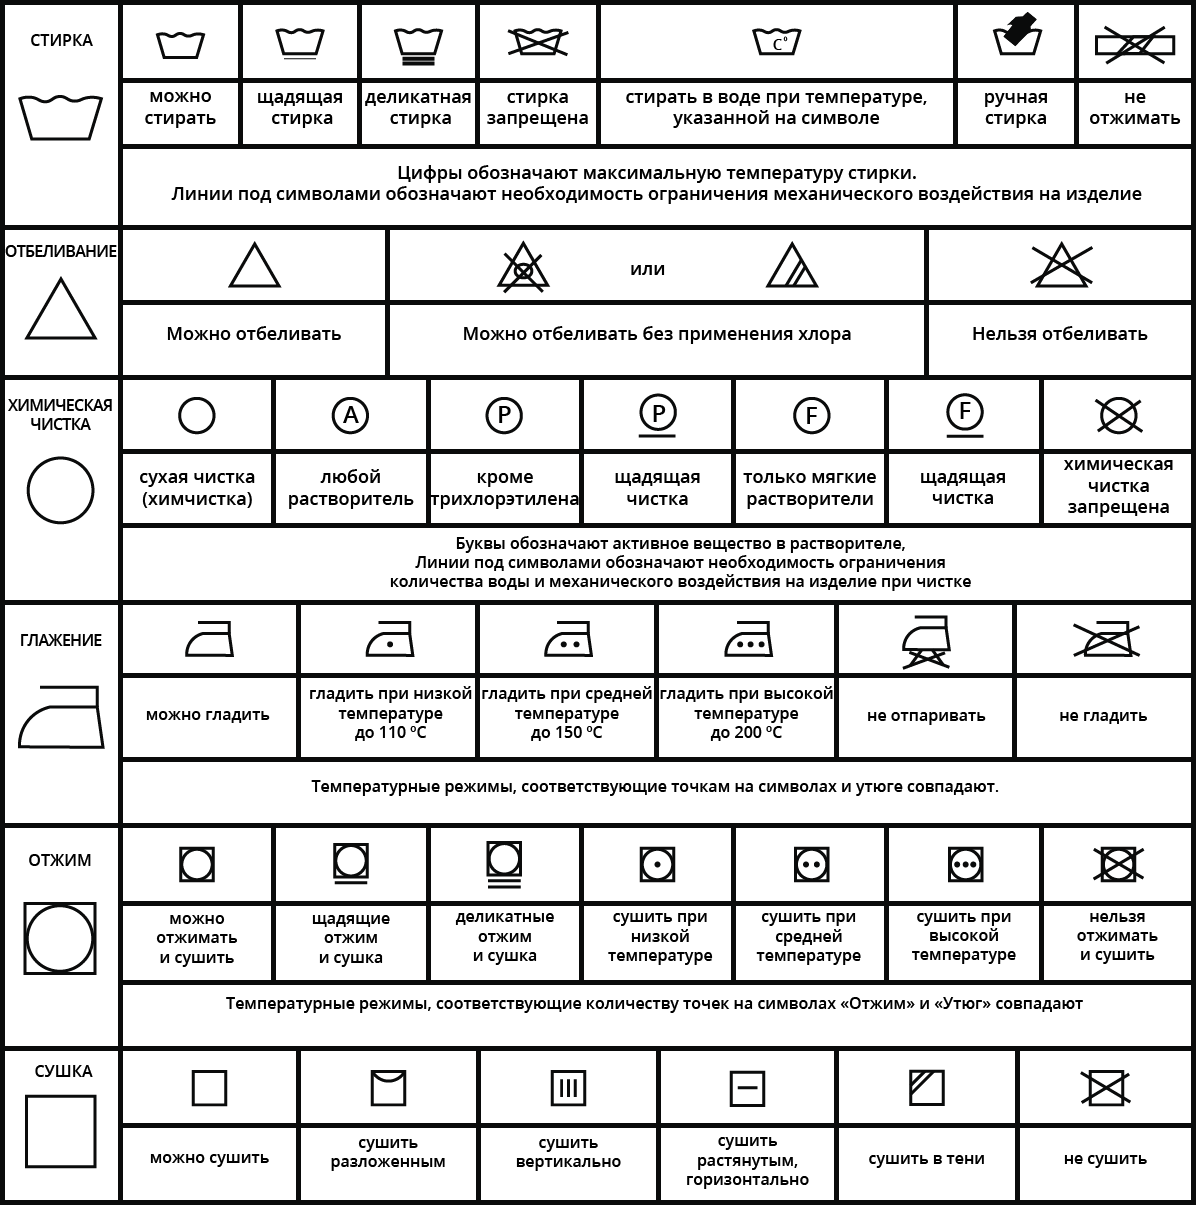 Ярлыки для стирки на одежде обозначения расшифровка таблица